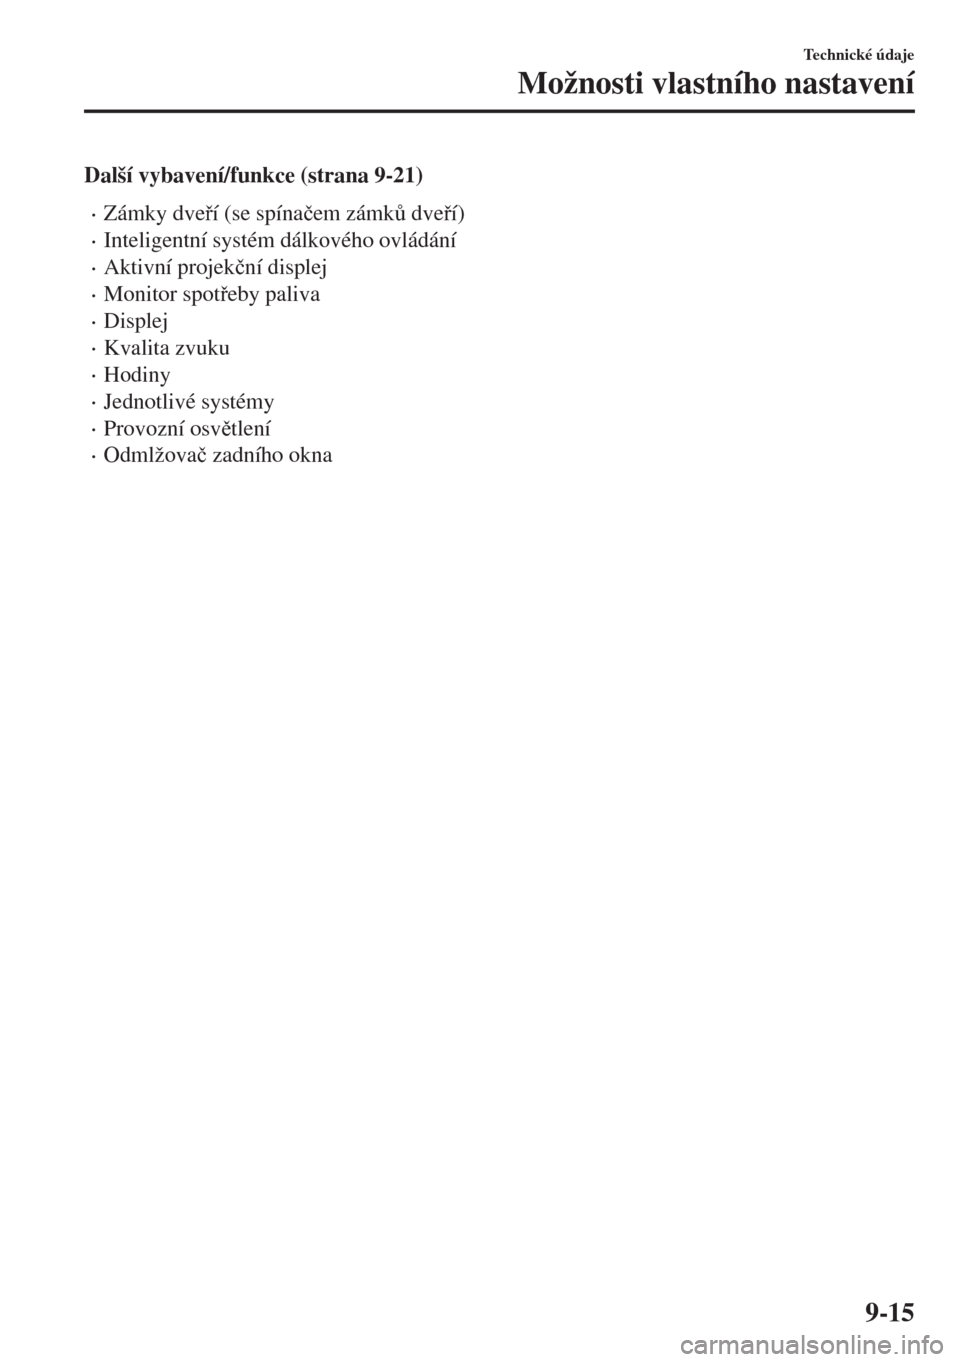 MAZDA MODEL 6 2018  Návod k obsluze (in Czech) Další vybavení/funkce (strana 9-21)
•Zámky dveí (se spína�þem zámk$ dveí)
•Inteligentní systém dálkového ovládání
•Aktivní projek�þní displej
•Monitor spoteby paliva
